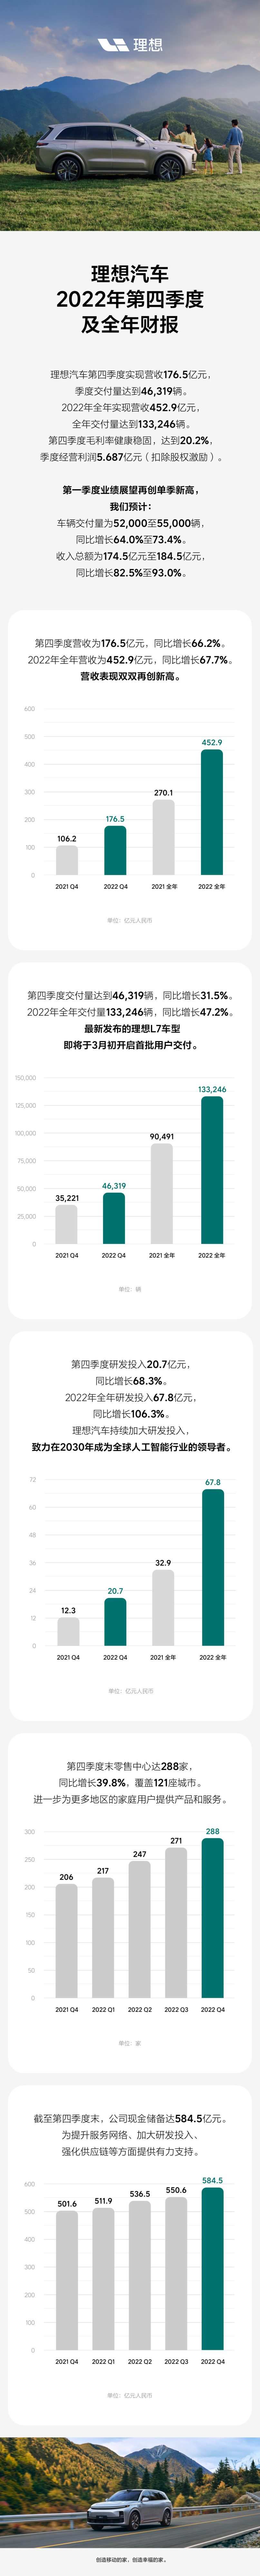 理想汽车公布2022年第四季度及全年财报_副本.jpg